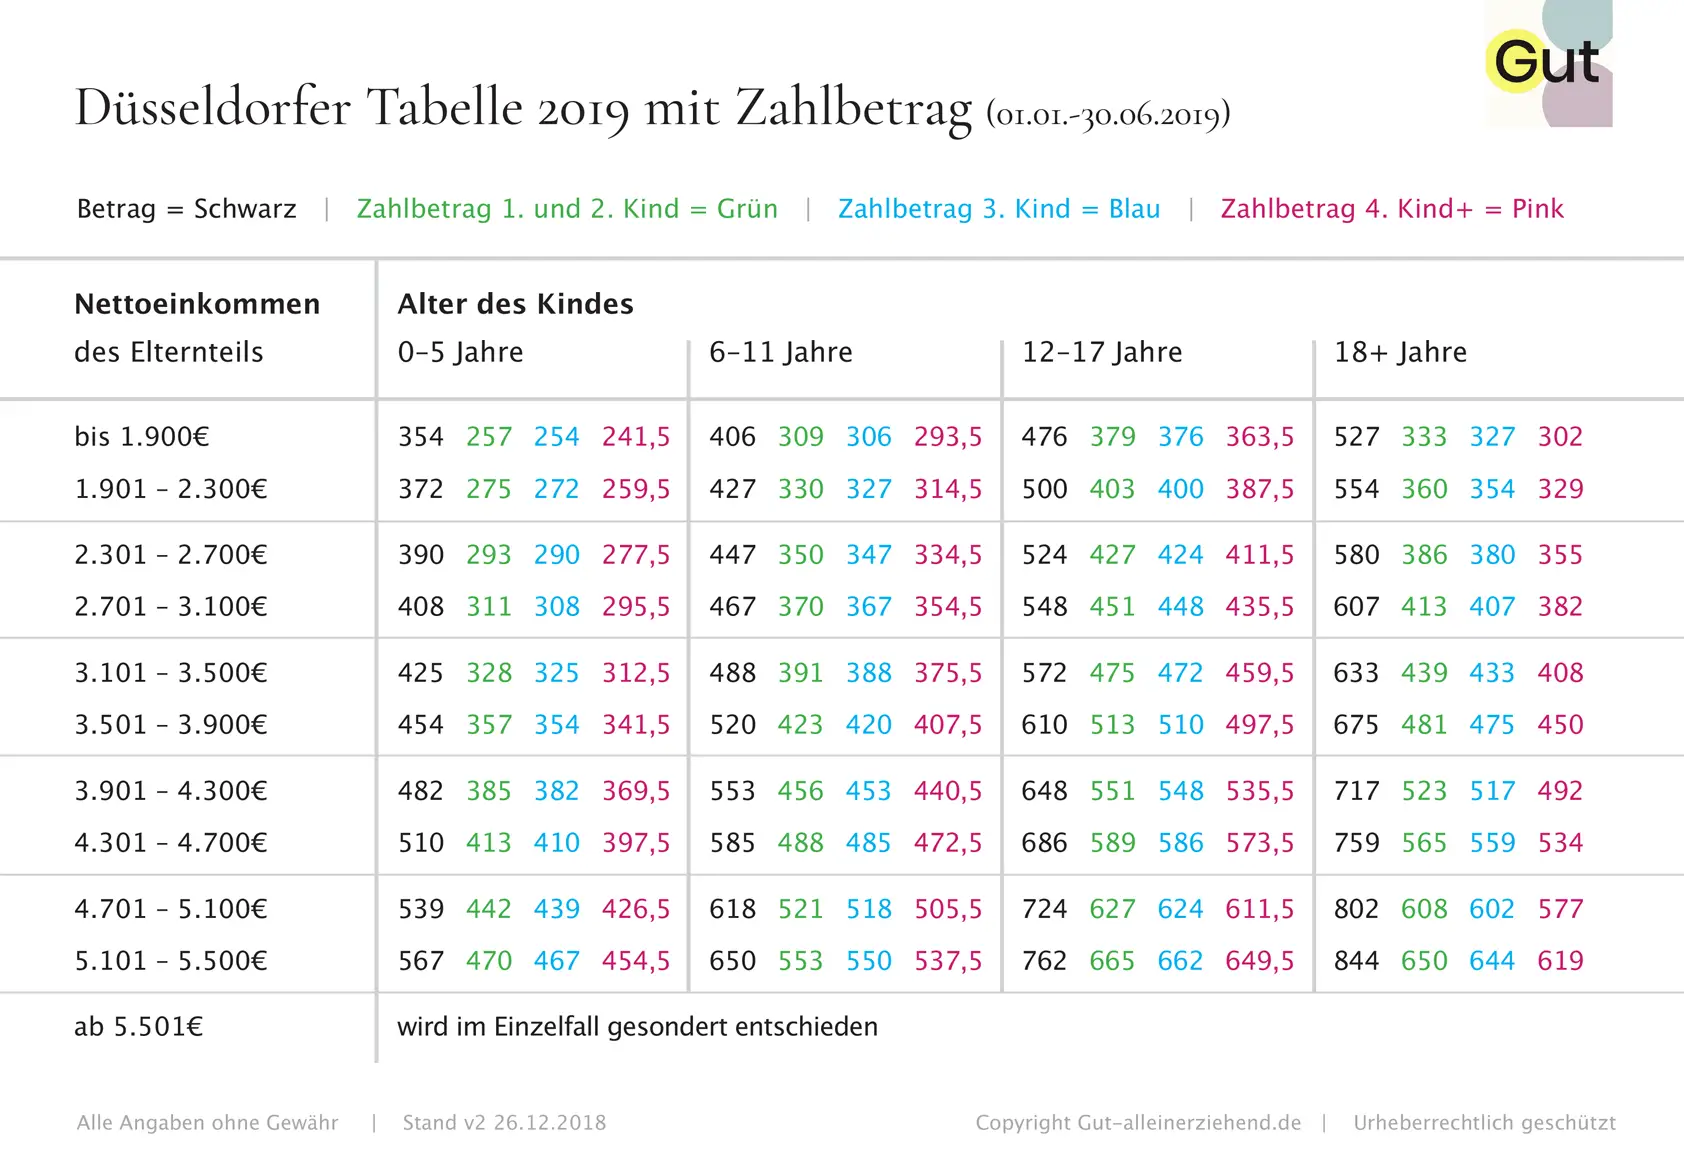 Düsseldorfer Tabelle 2019 mit Zahlbetrag - Gut alleinerziehend